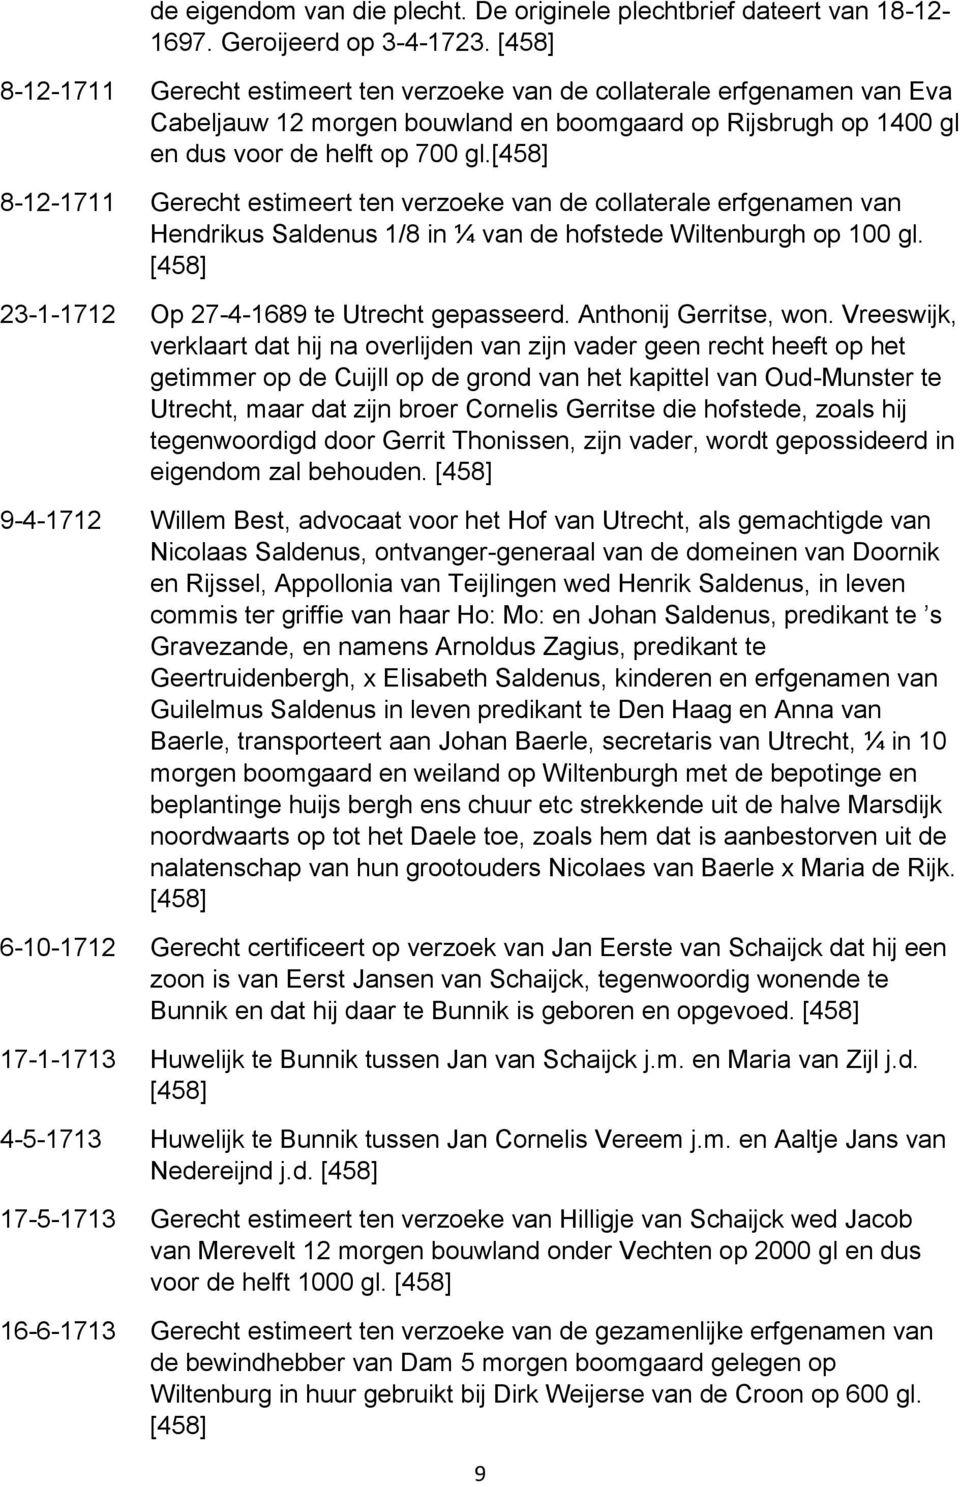 8-12-1711 Gerecht estimeert ten verzoeke van de collaterale erfgenamen van Hendrikus Saldenus 1/8 in ¼ van de hofstede Wiltenburgh op 100 gl. 23-1-1712 Op 27-4-1689 te Utrecht gepasseerd.